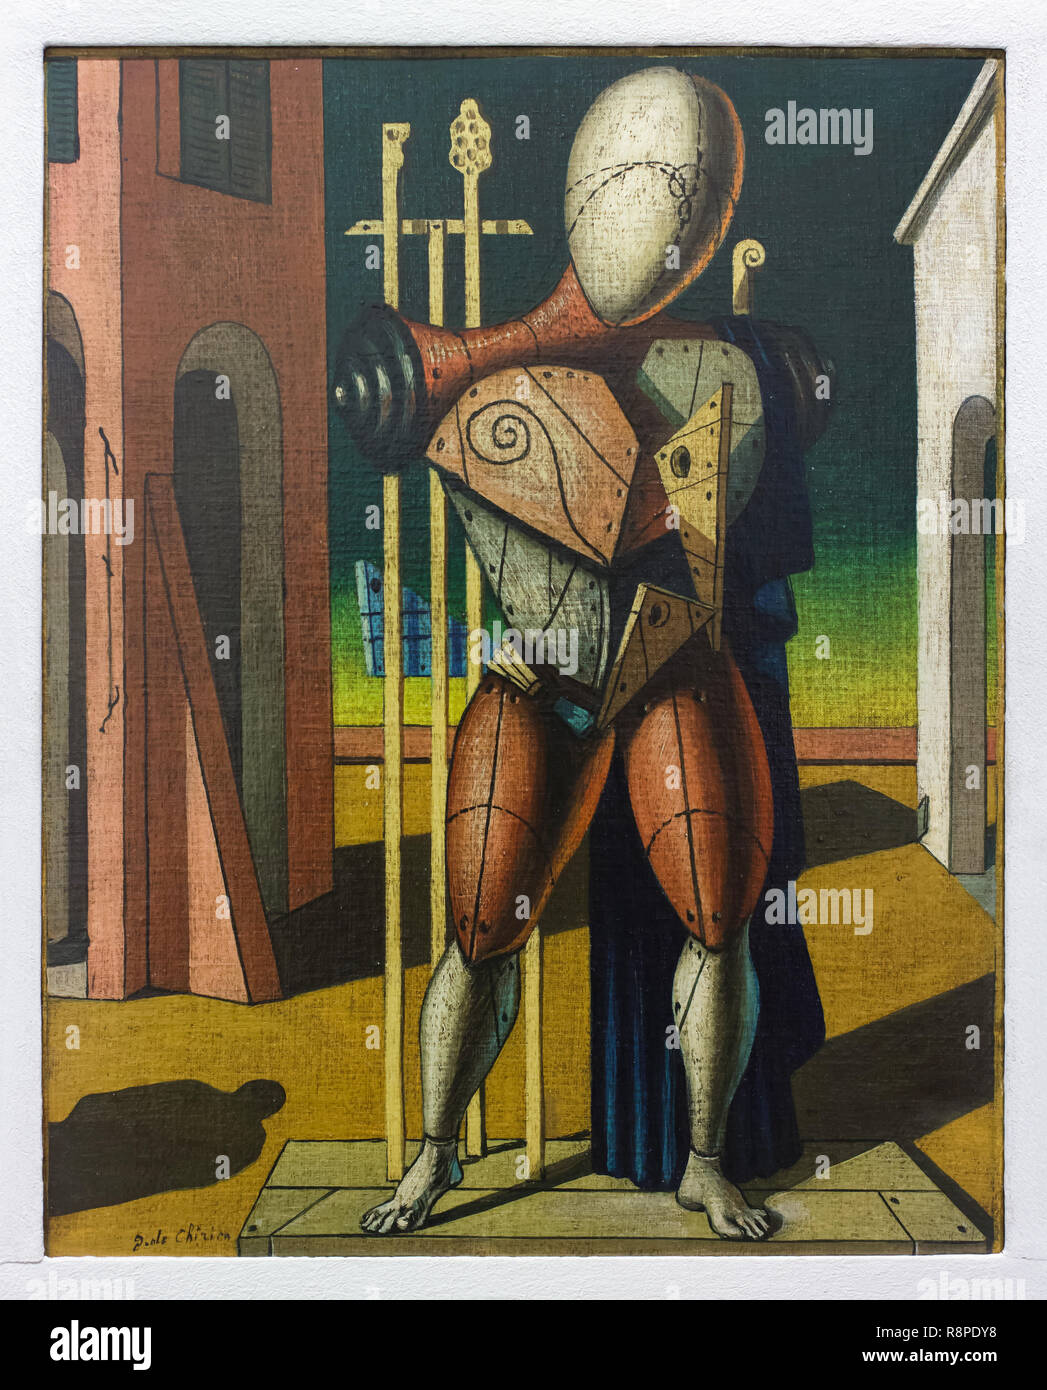 Gemälde "Troubadour" von Italienischen modernistischen Maler Giorgio De Chirico (1950) in der Internationalen Galerie für Moderne Kunst (Galleria Internazionale d'Arte Moderna) im Ca' Pesaro (Pesaro Palace) in Venedig, Italien. Stockfoto